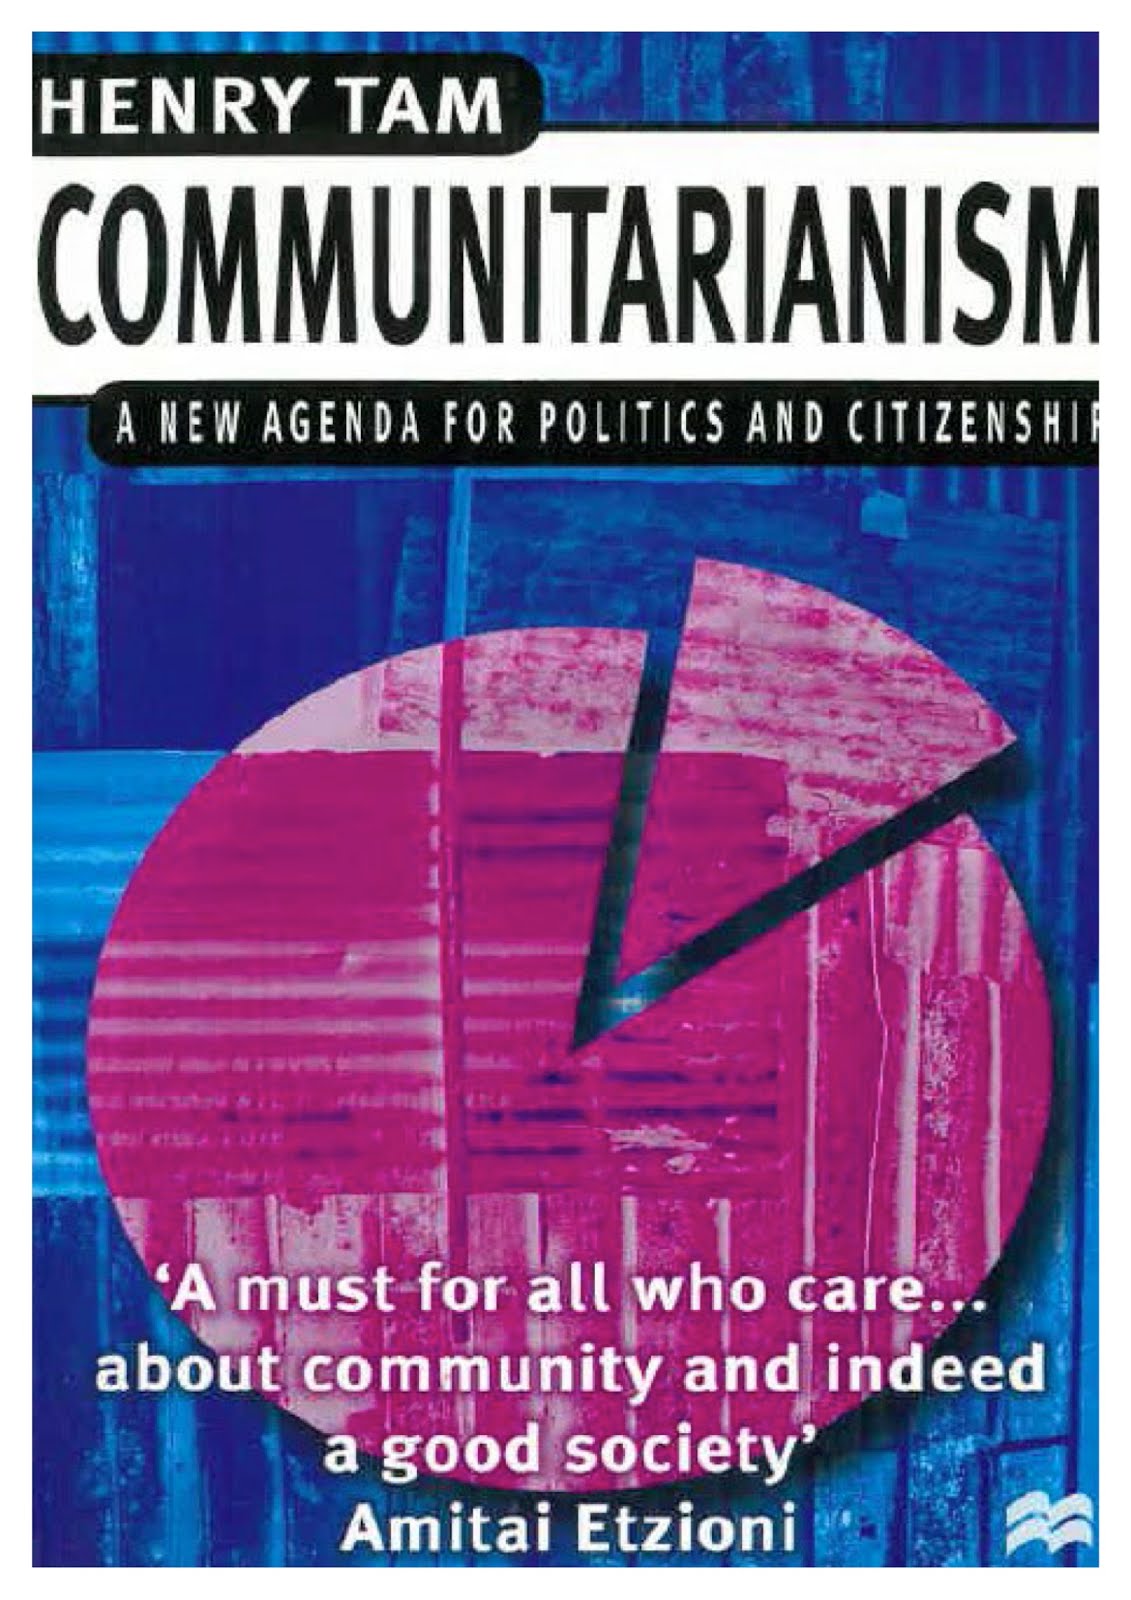 Communitarianism Explained